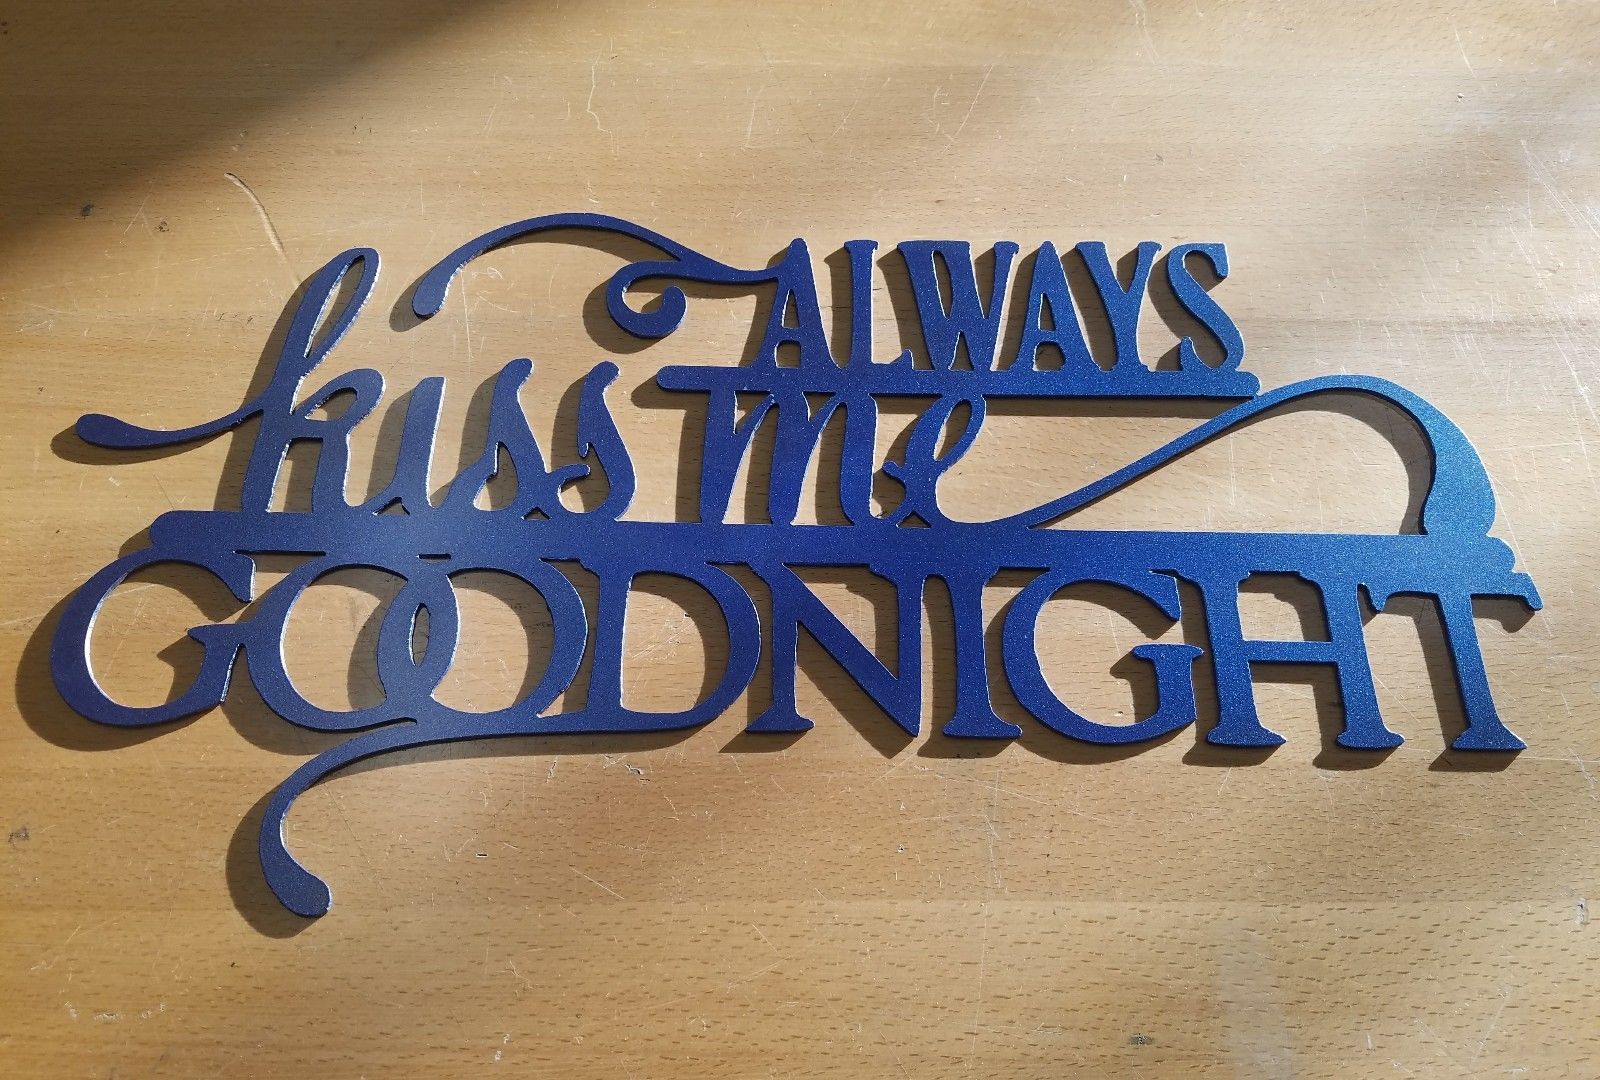 Kiss me Goodnight sign metal wall art plasma cut decor gift idea